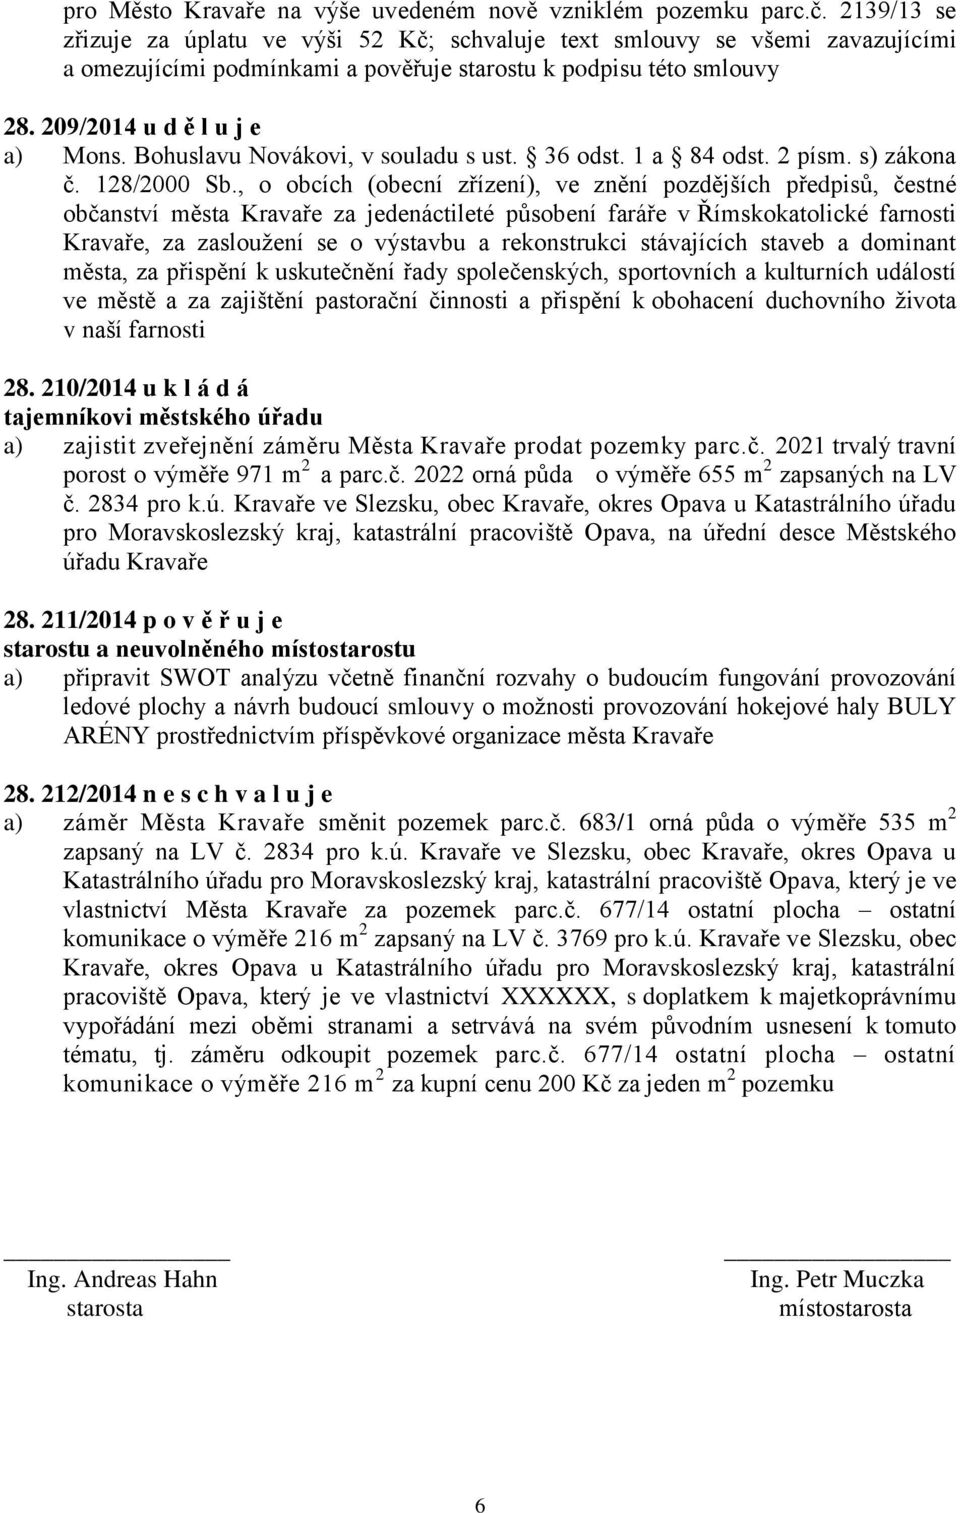 Bohuslavu Novákovi, v souladu s ust. 36 odst. 1 a 84 odst. 2 písm. s) zákona č. 128/2000 Sb.